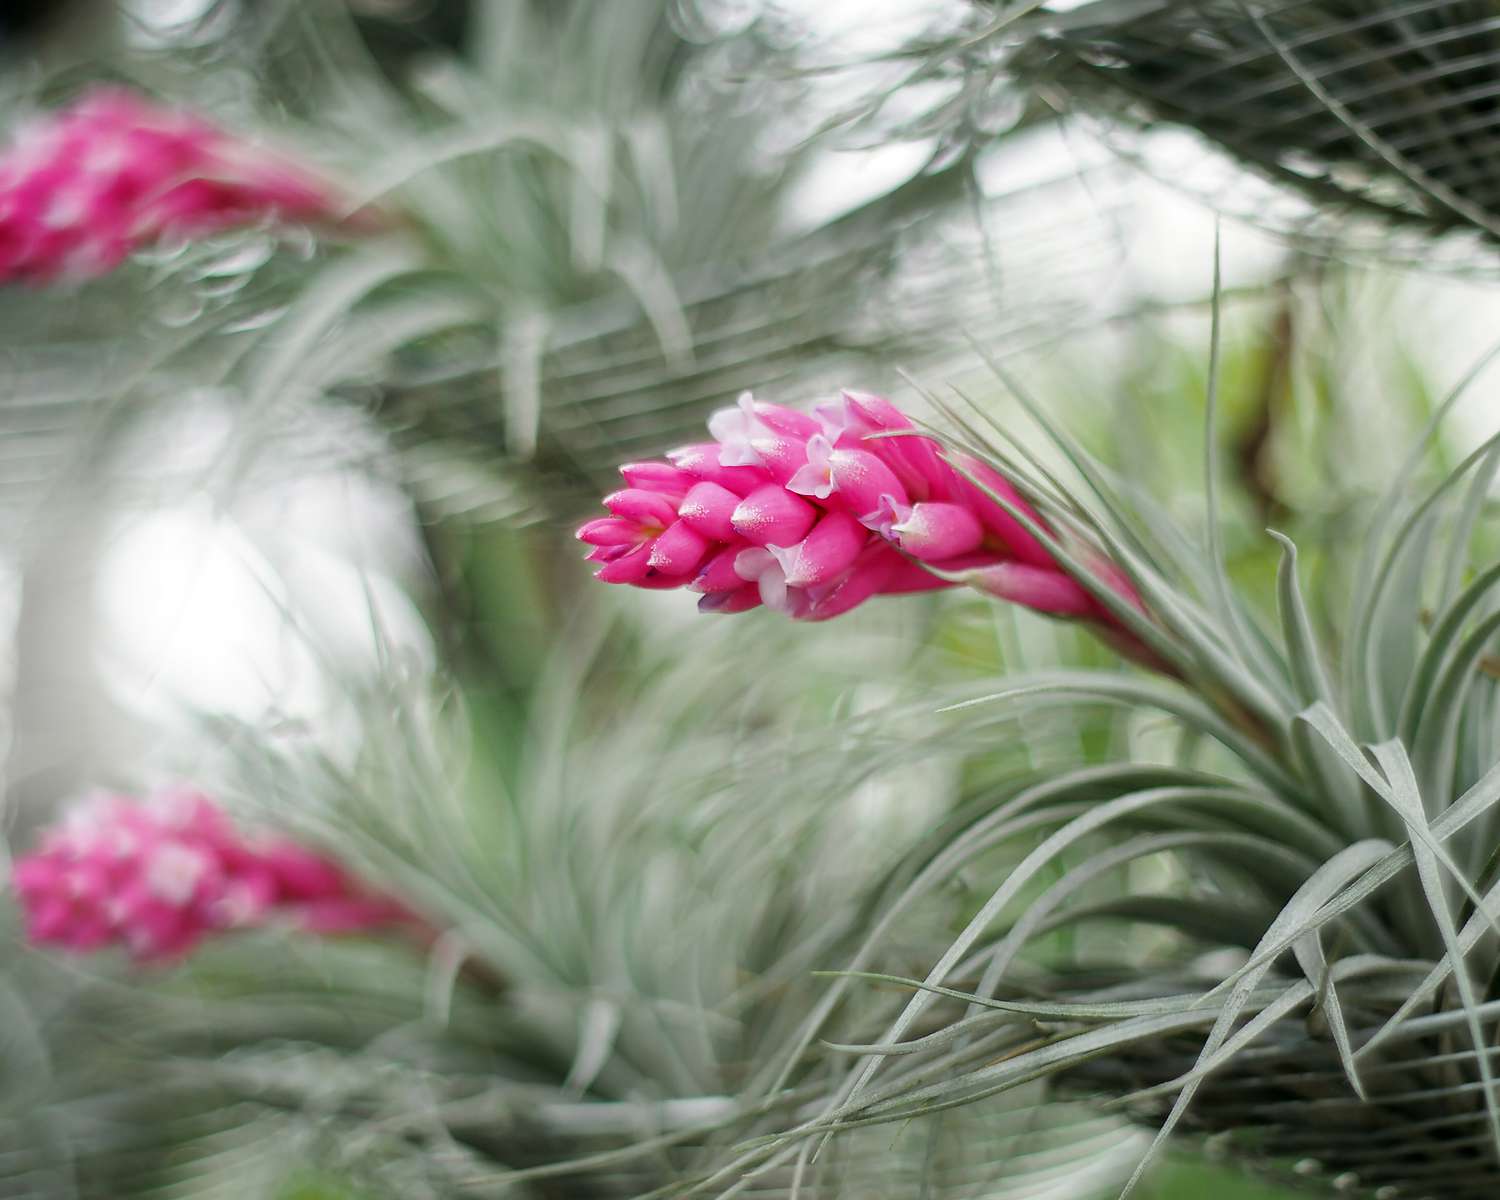 'Cotton Candy' Luftpflanze mit silbrig-grünen Blättern und leuchtend rosa Blüten